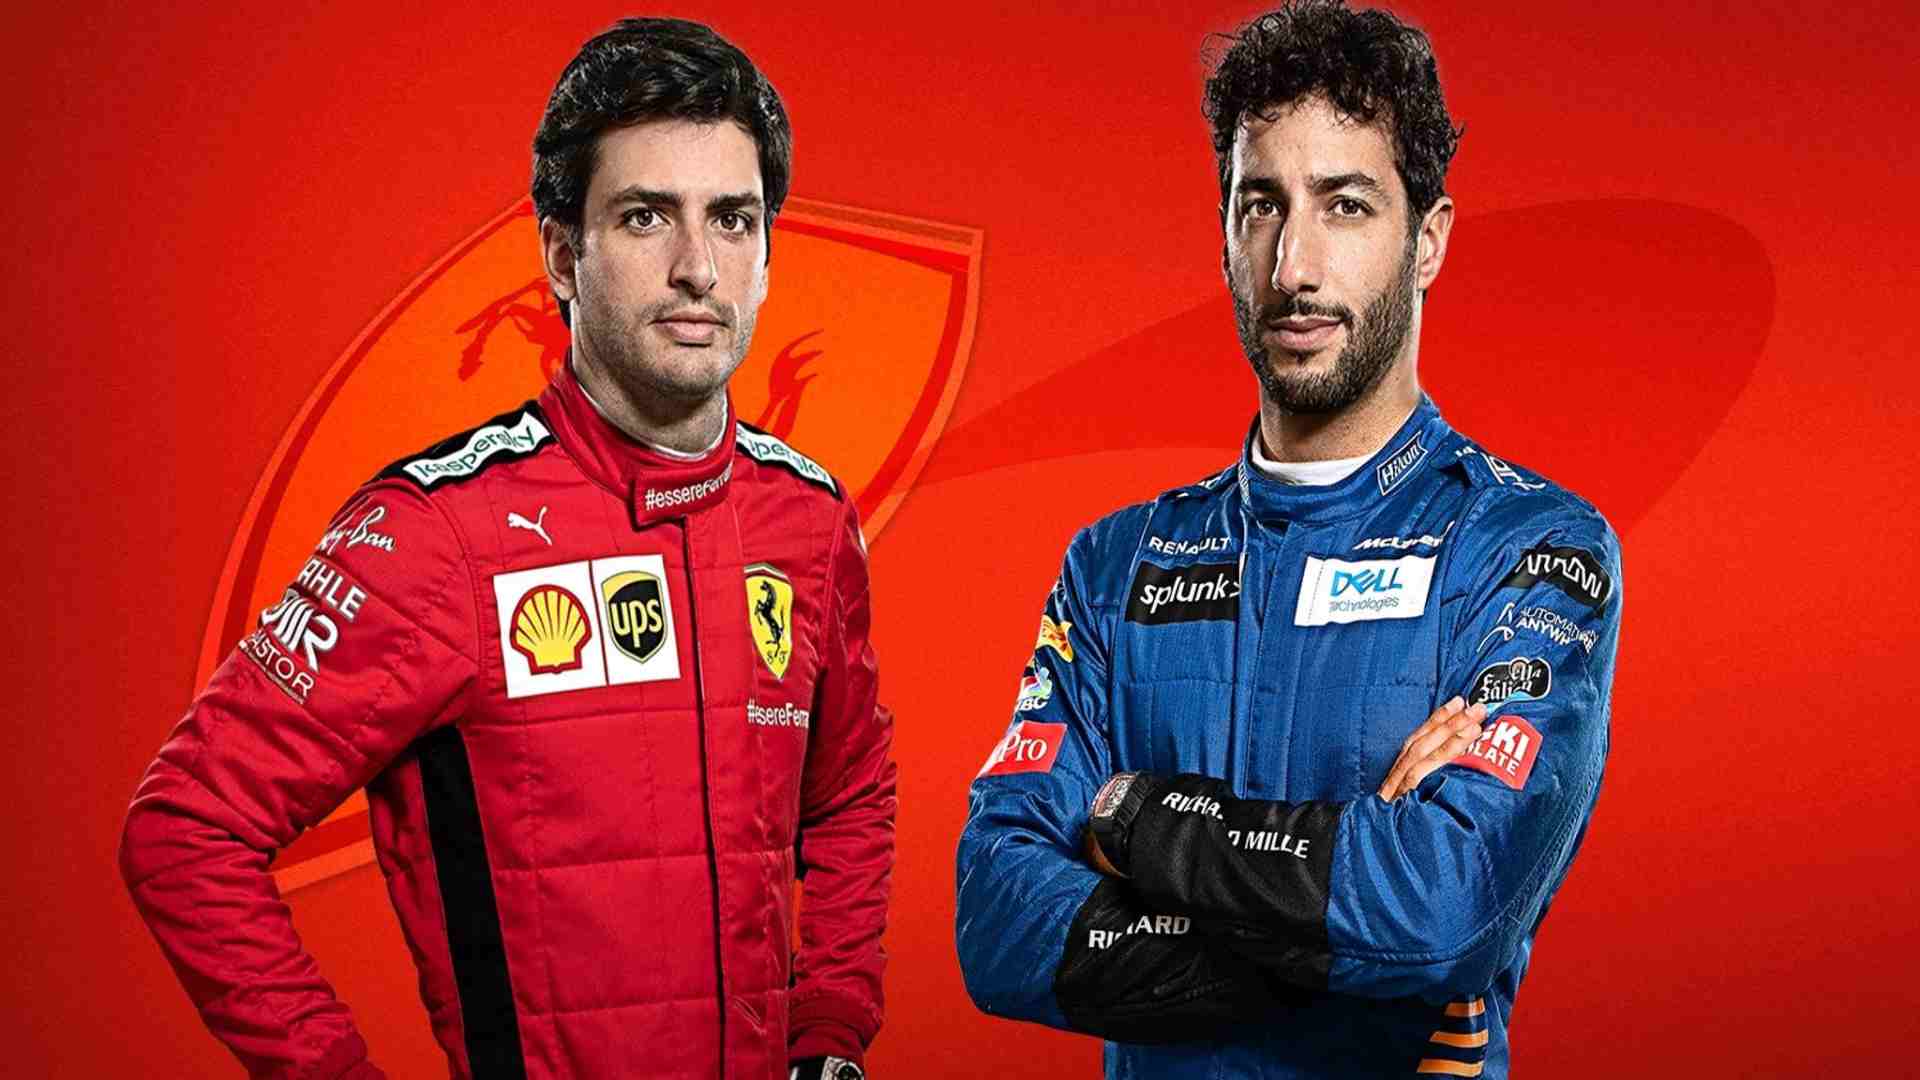 Did Ferrari want Daniel Ricciardo to pair with Charles Leclerc over Carlos Sainz?